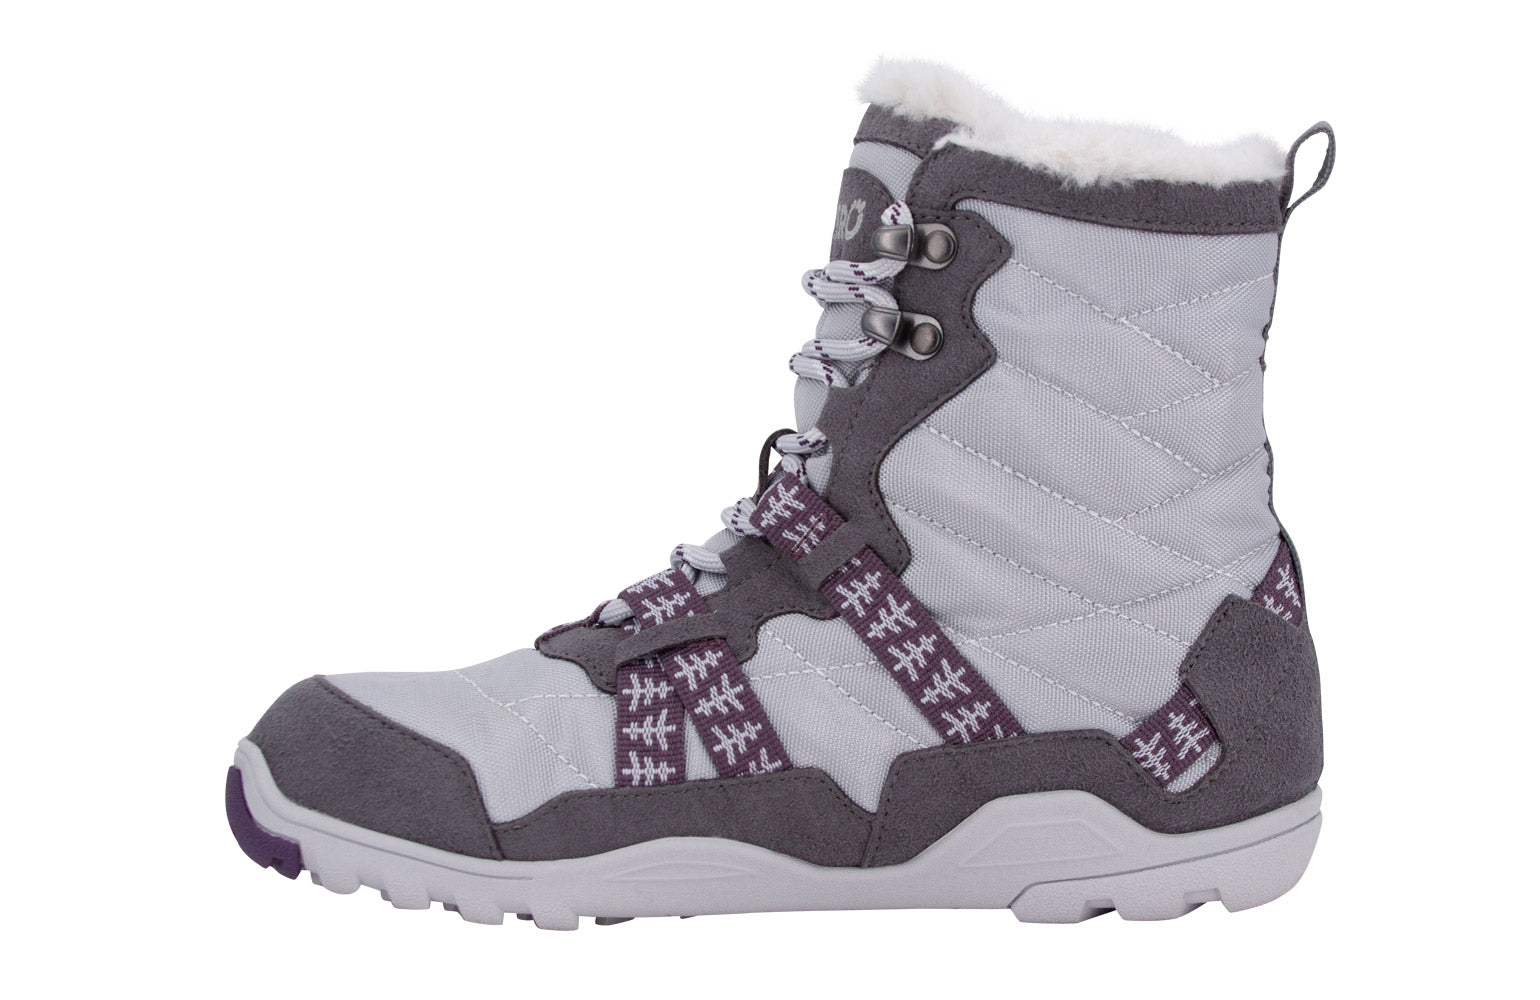 Xero Shoes Alpine Womens barfods vinterstøvler til kvinder i farven frost, inderside